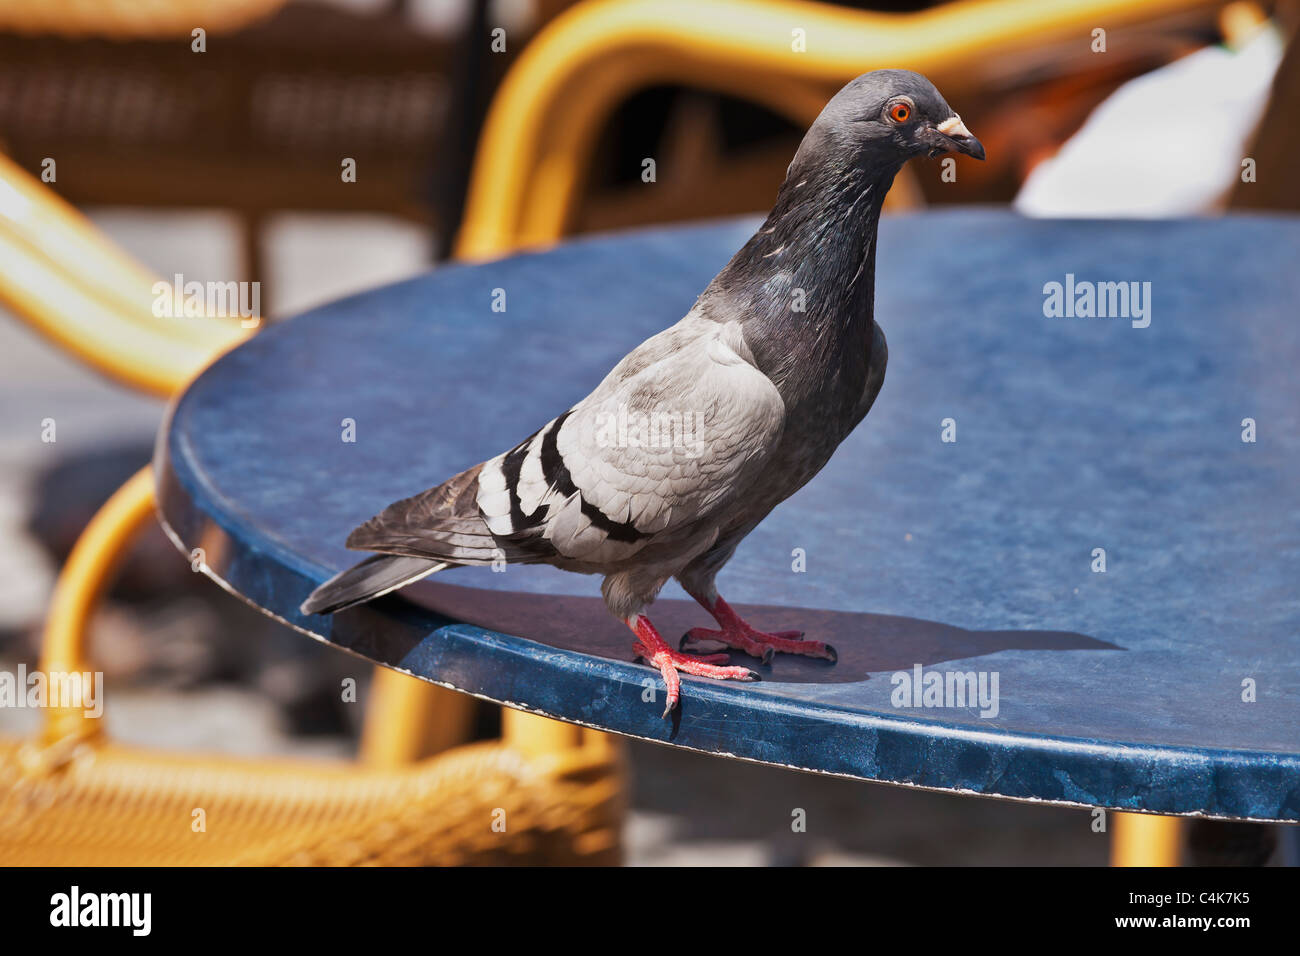 Eine Stadttaube sitzt auf der Kante von einem Tisch | a città di Pigeon è seduta sul bordo di un tavolo Foto Stock